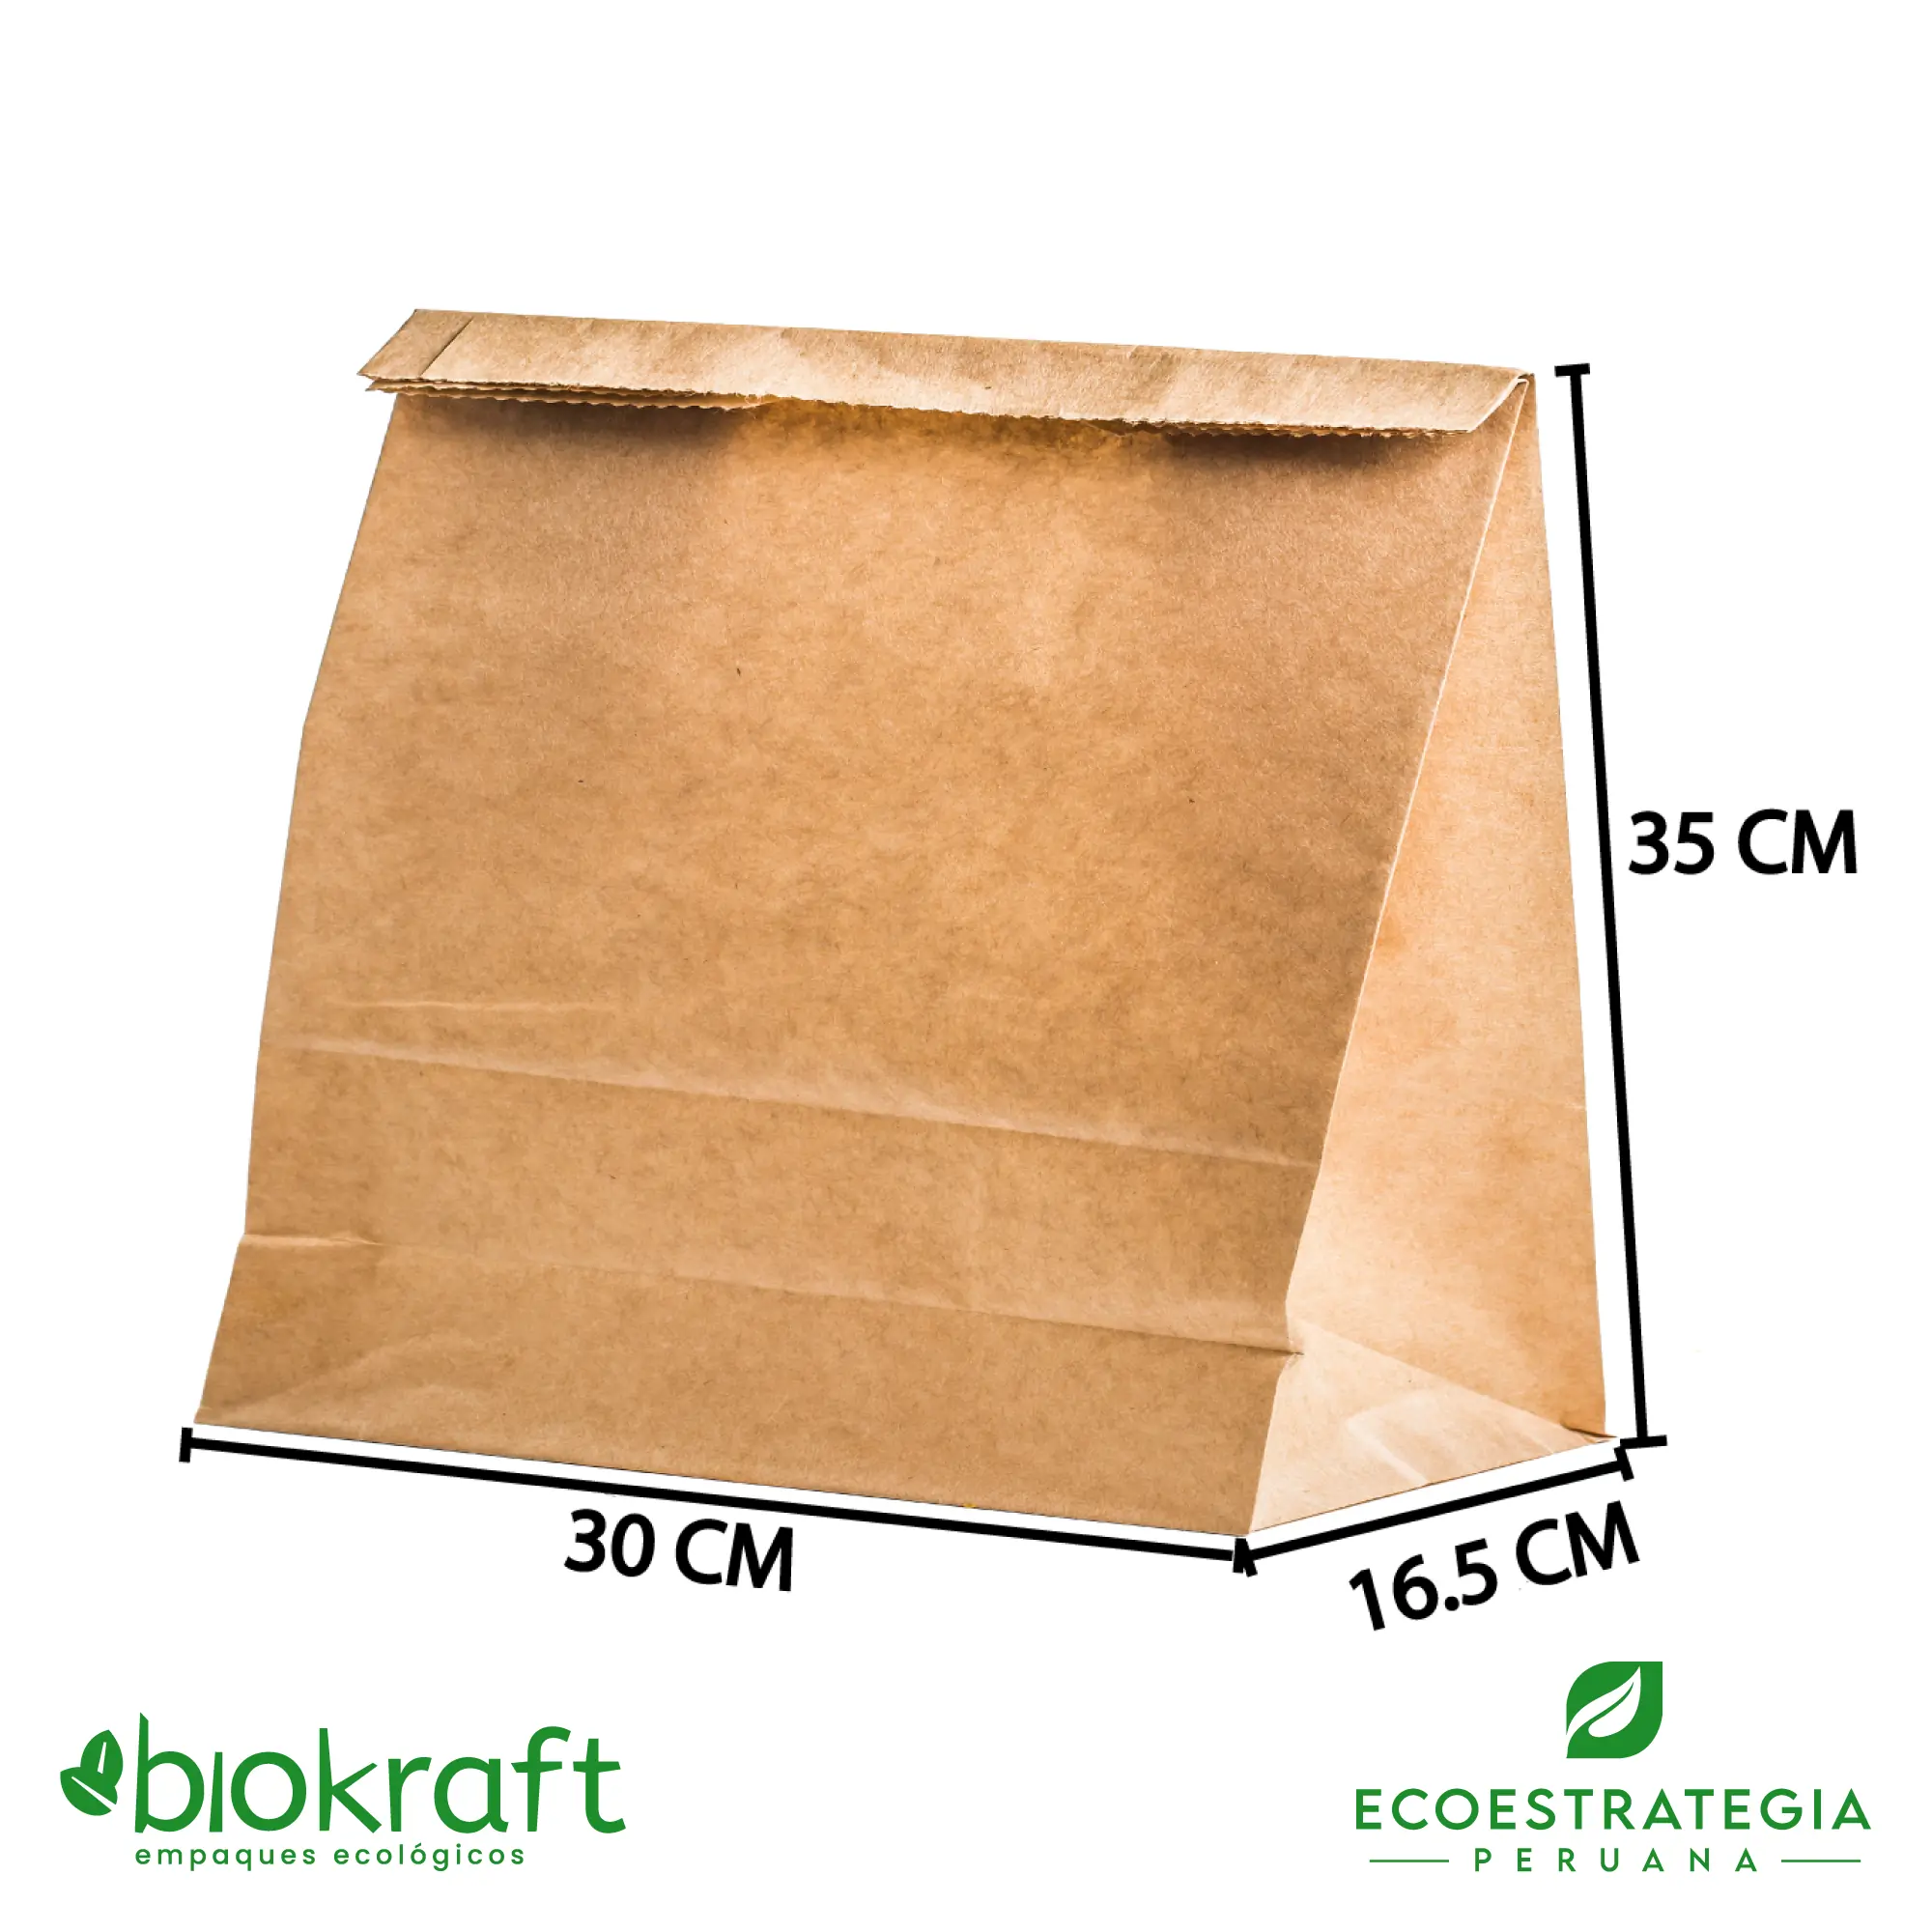 El modelo BRSA-CORTA es una bolsa de papel kraft brasa corta biodegradable y es conocido también como bolsa brasa corta de papel estraza. Cuenta con un grosor de 80gr, altamente resistente para peso y muy personalizable, Cotiza ahora con tu logo personalizado